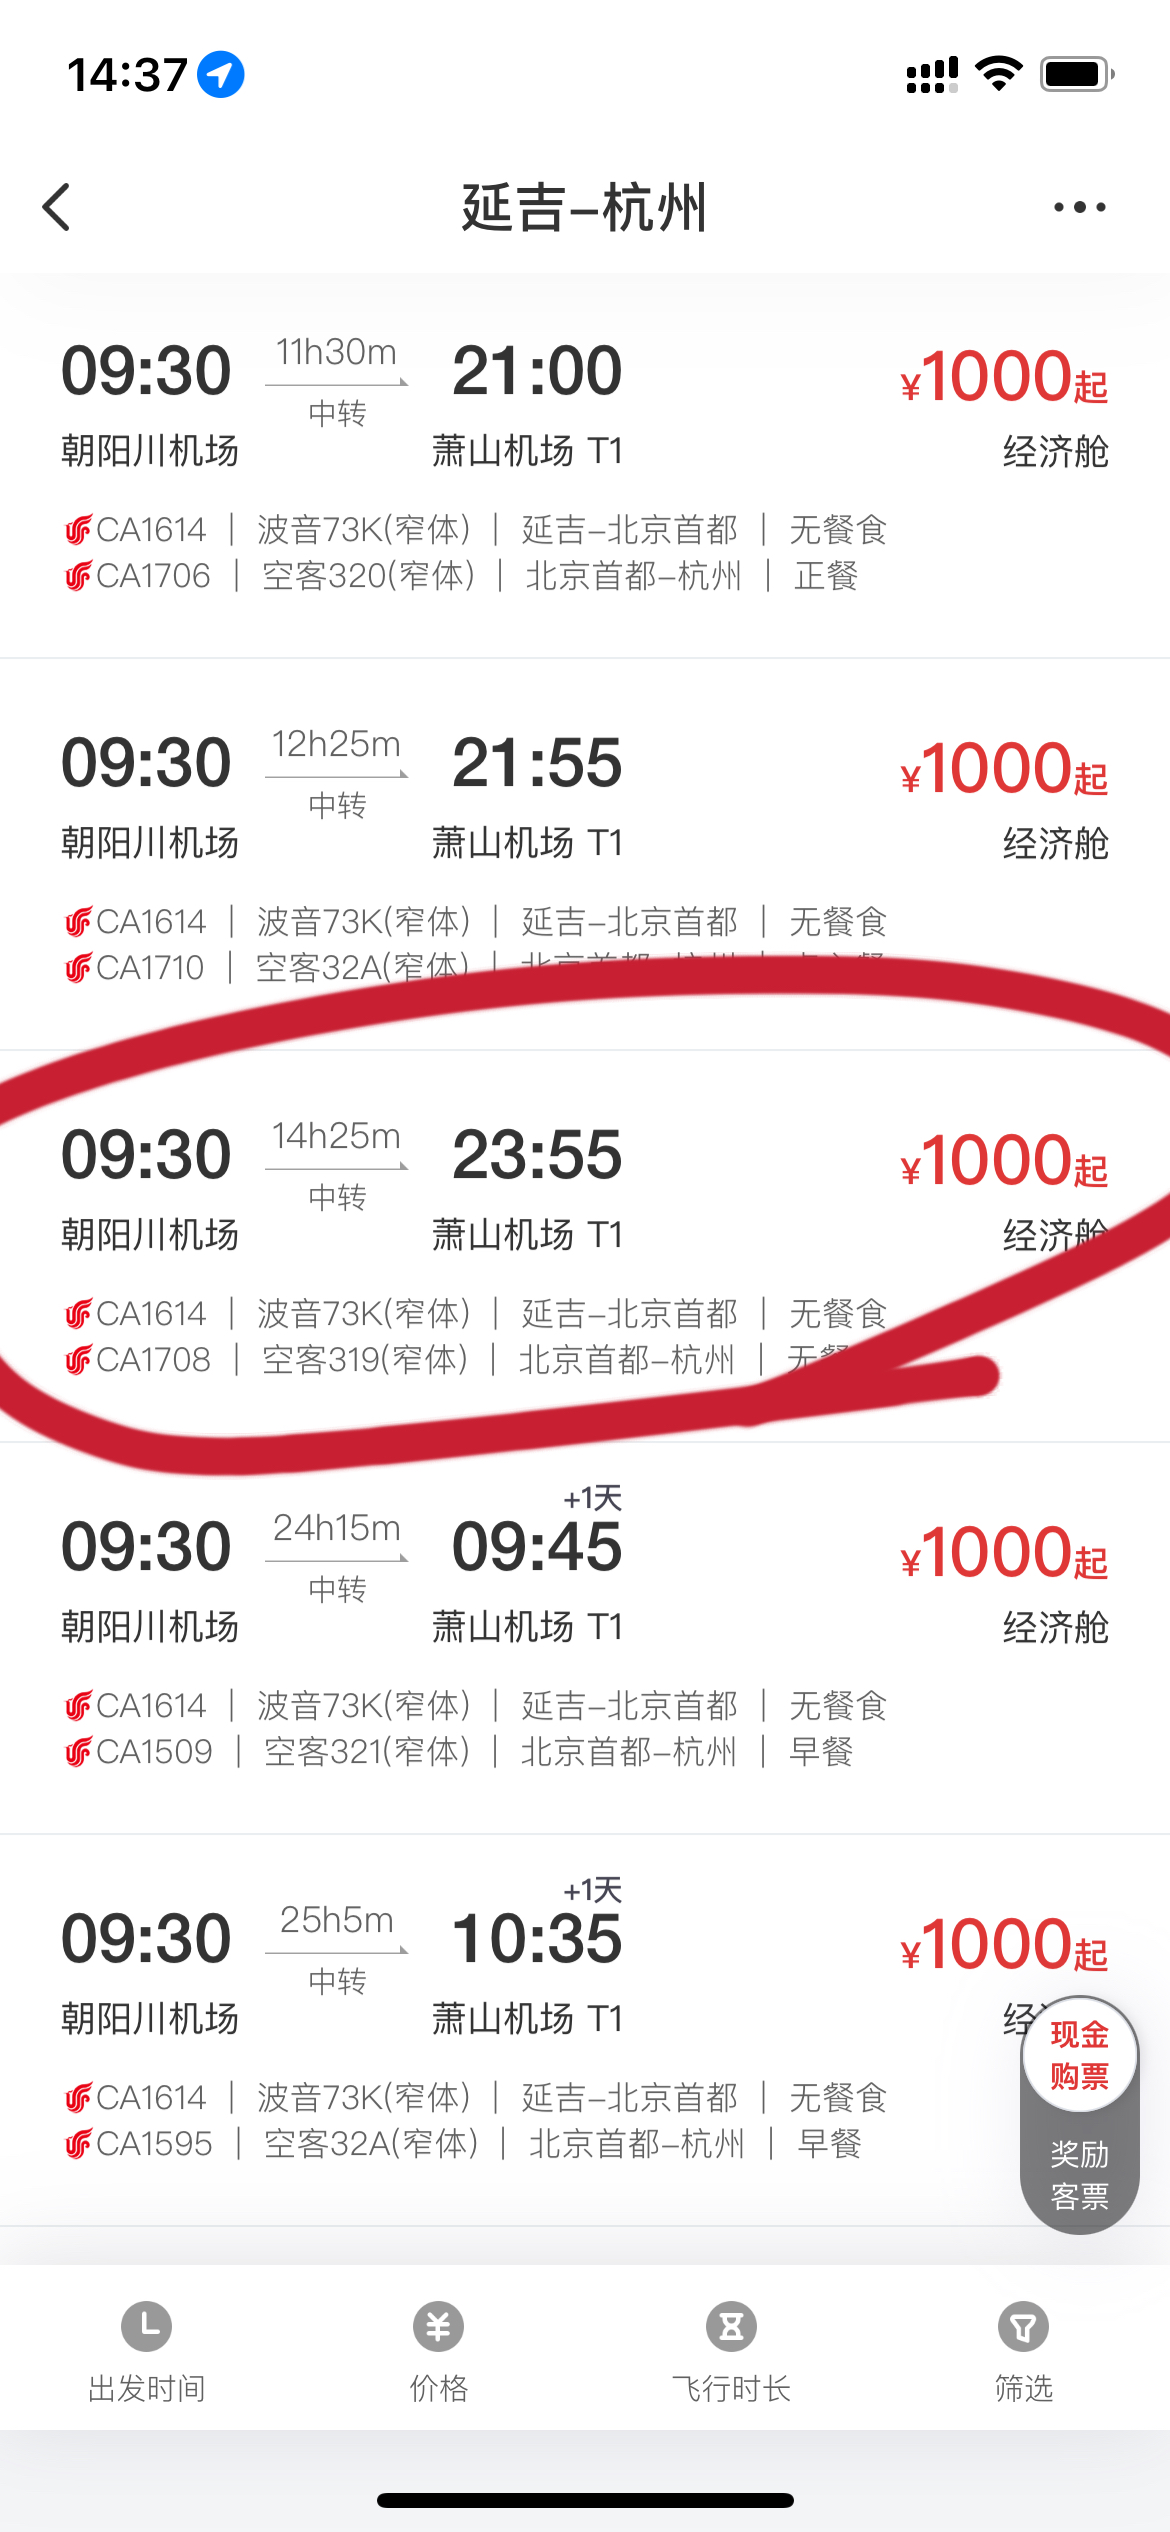 国航联程机票 前段已用 春节期间可以免费改期端午么-中国国航-飞客网